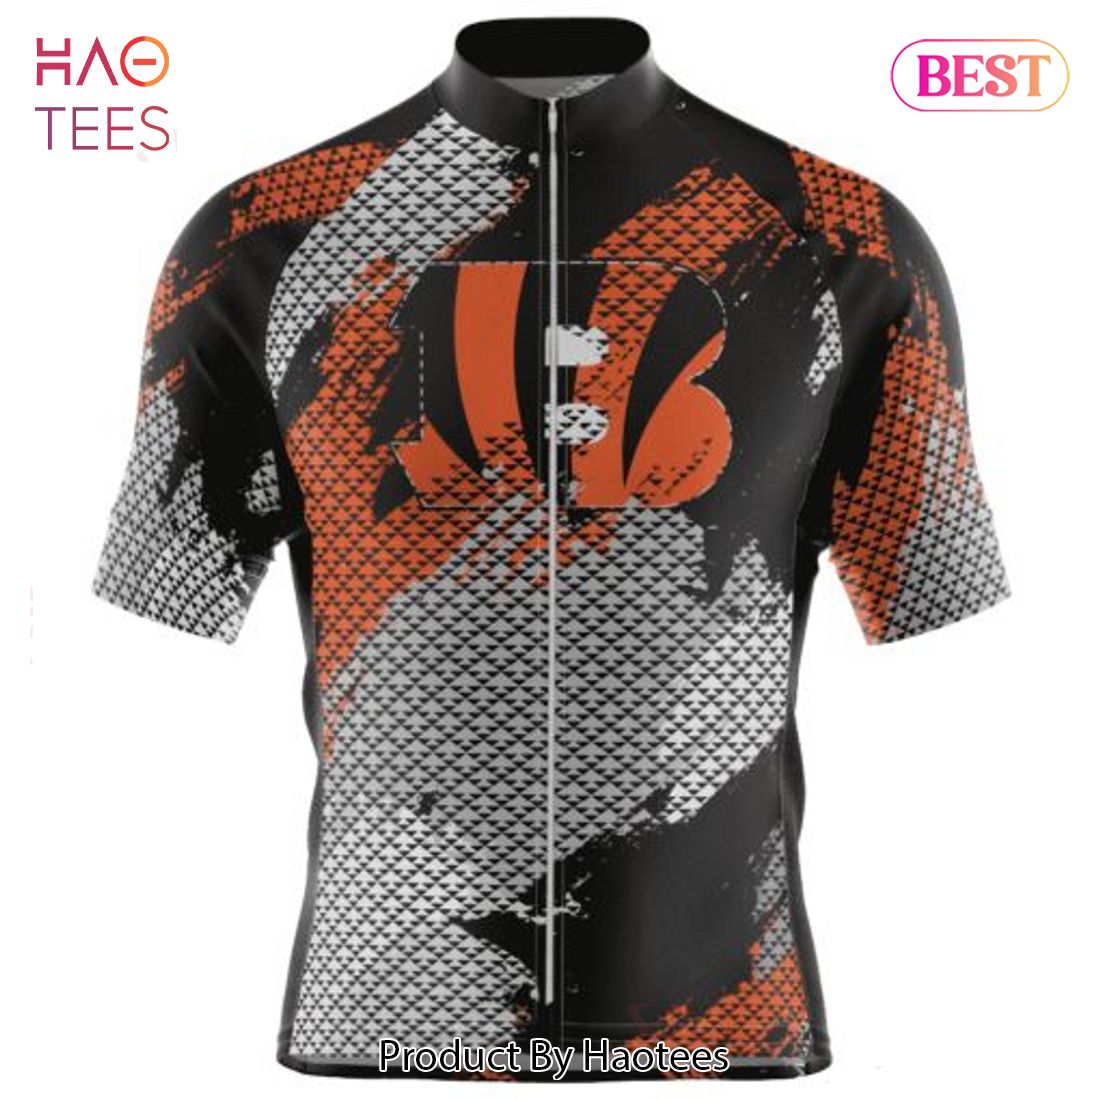 HOT TREND NFL Cincinnati Bengals Special Design Cycling Jersey Hoodie